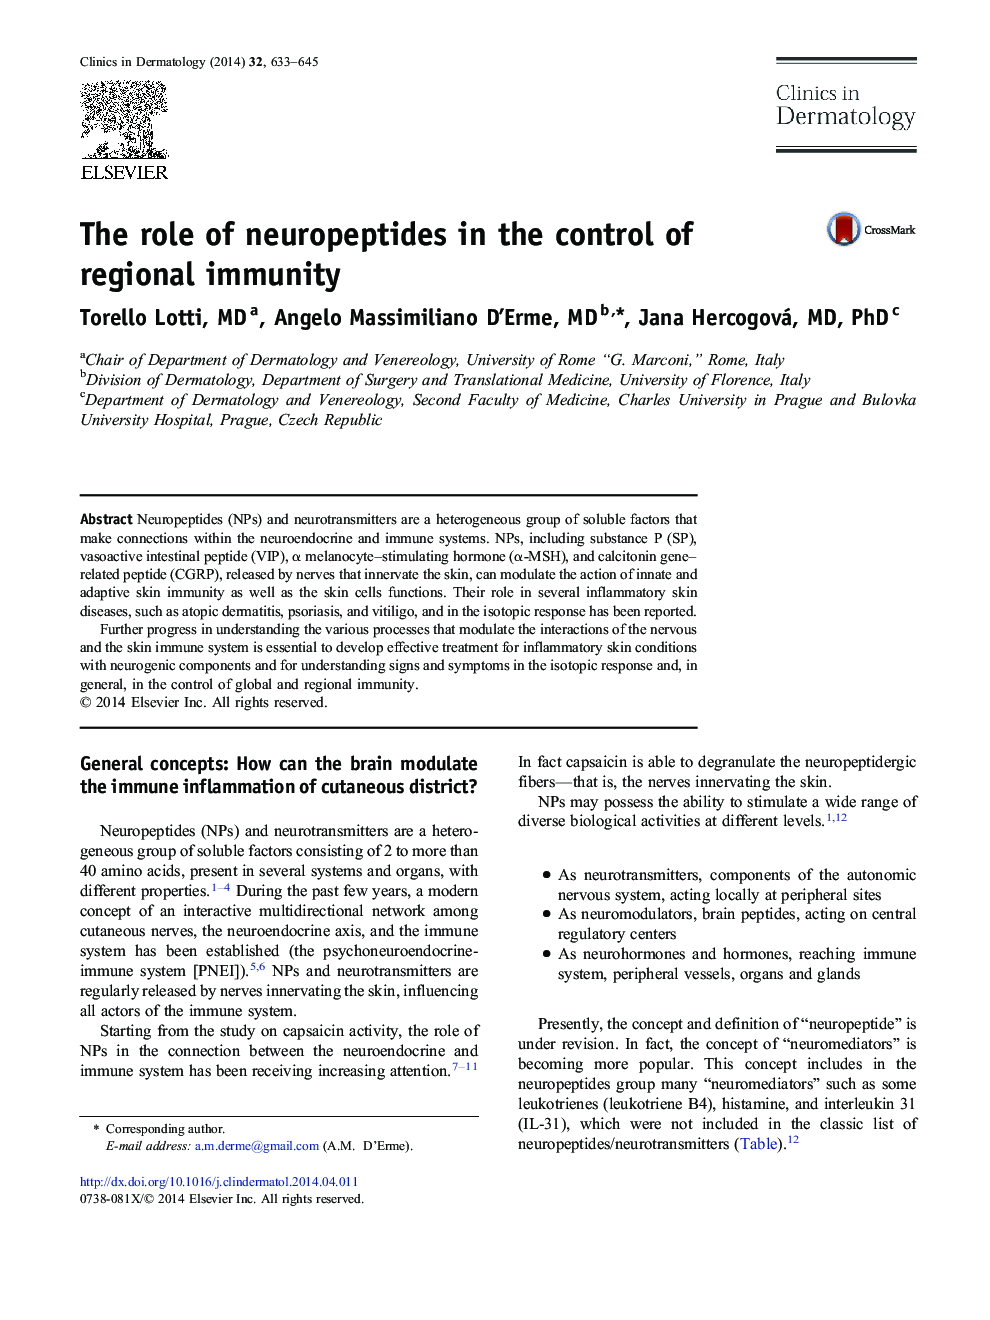 نقش نوروپپتیدها در کنترل ایمنی منطقه 